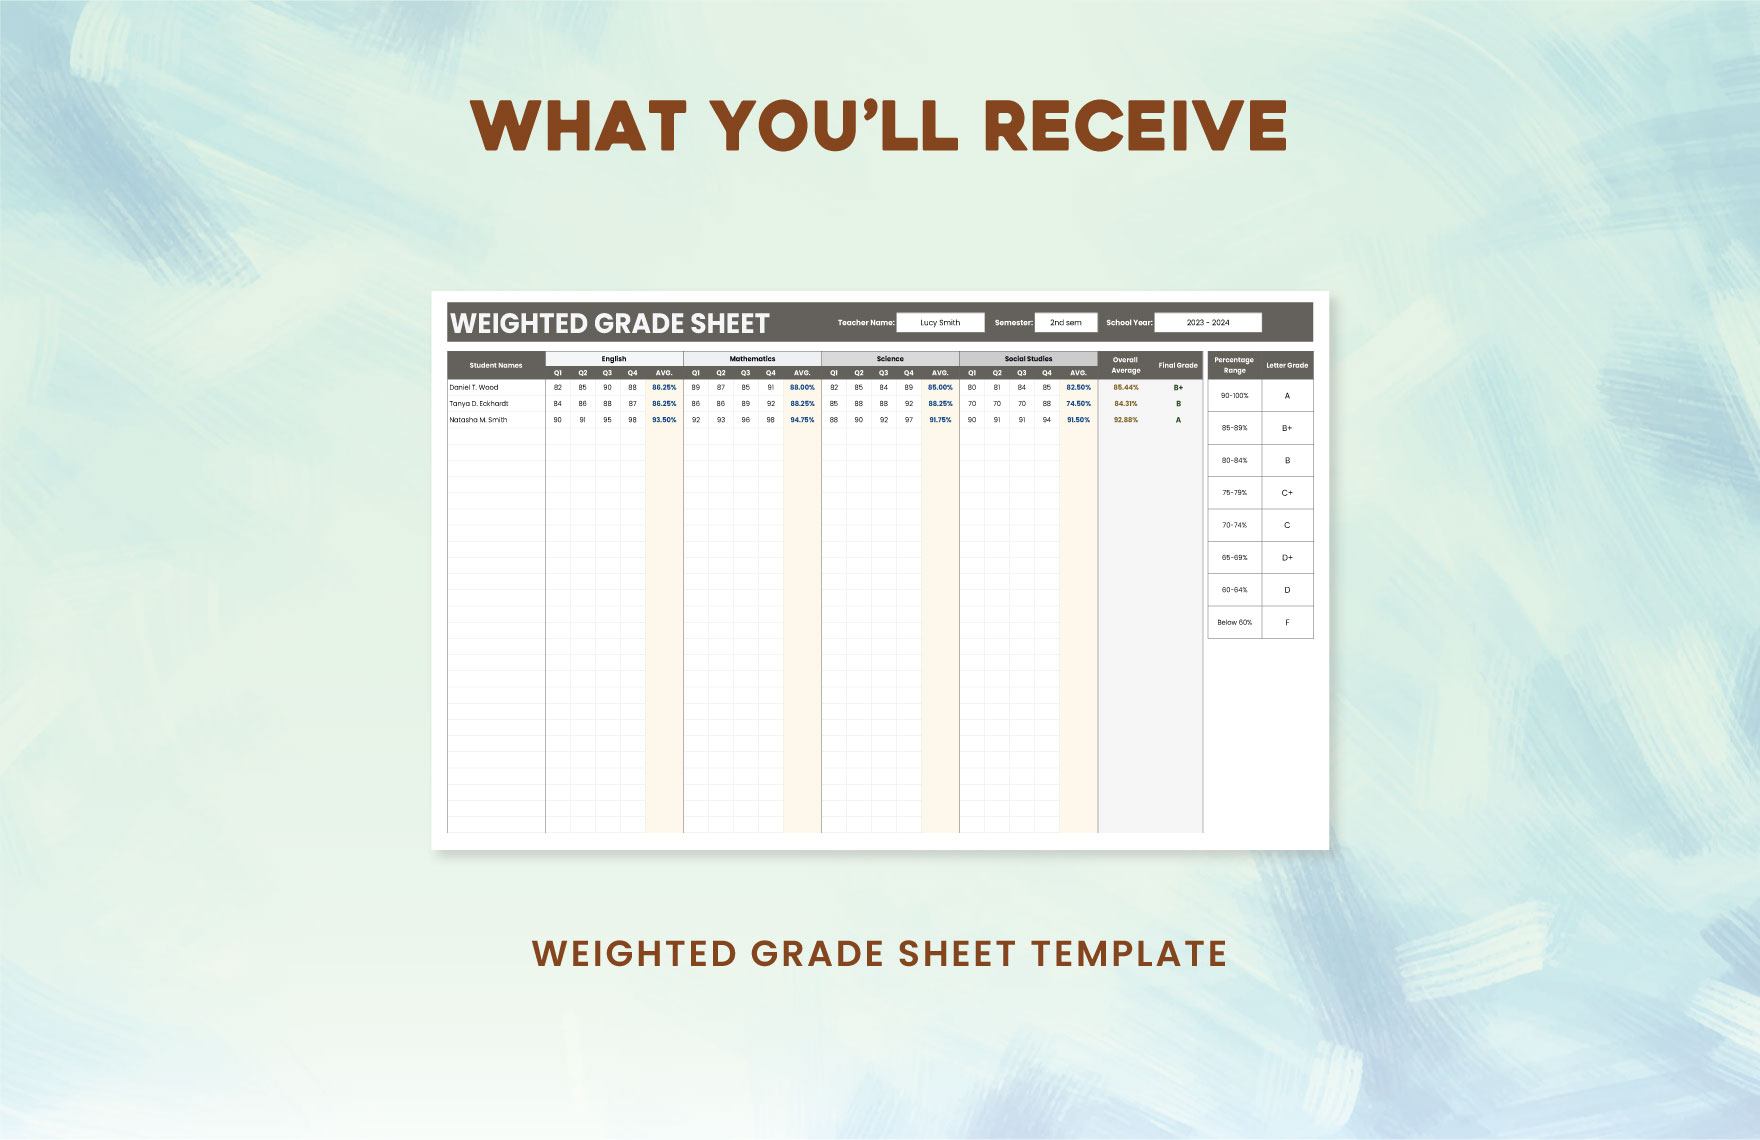 Weighted Grade Sheet Template